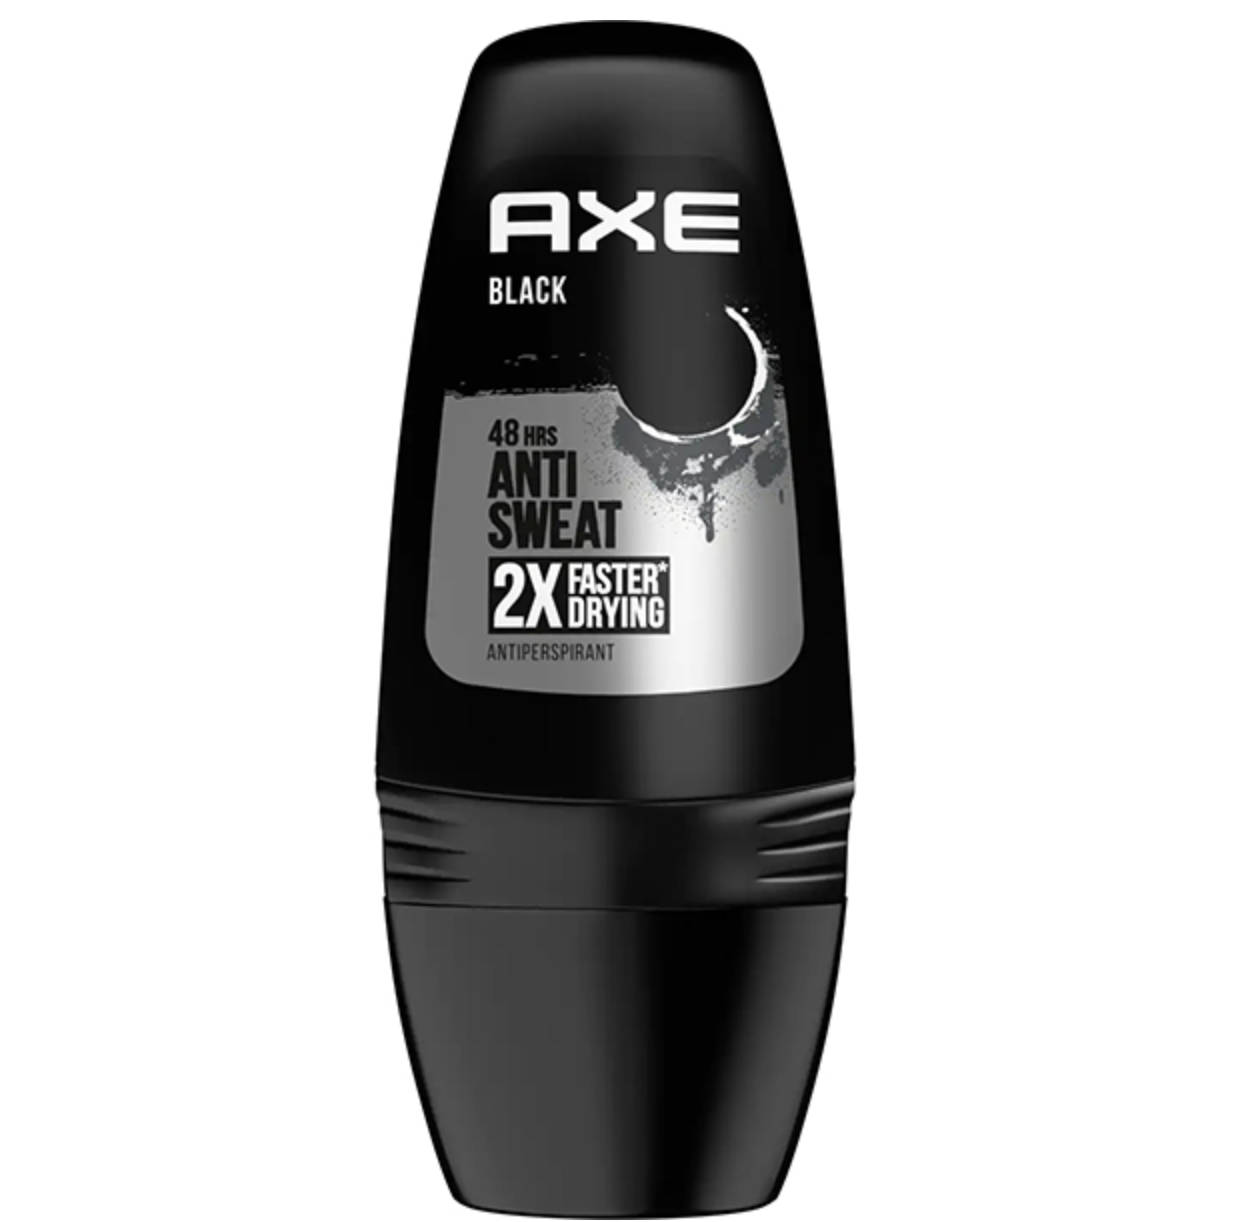    / Axe Black - -  Anti Sweat 48  50 